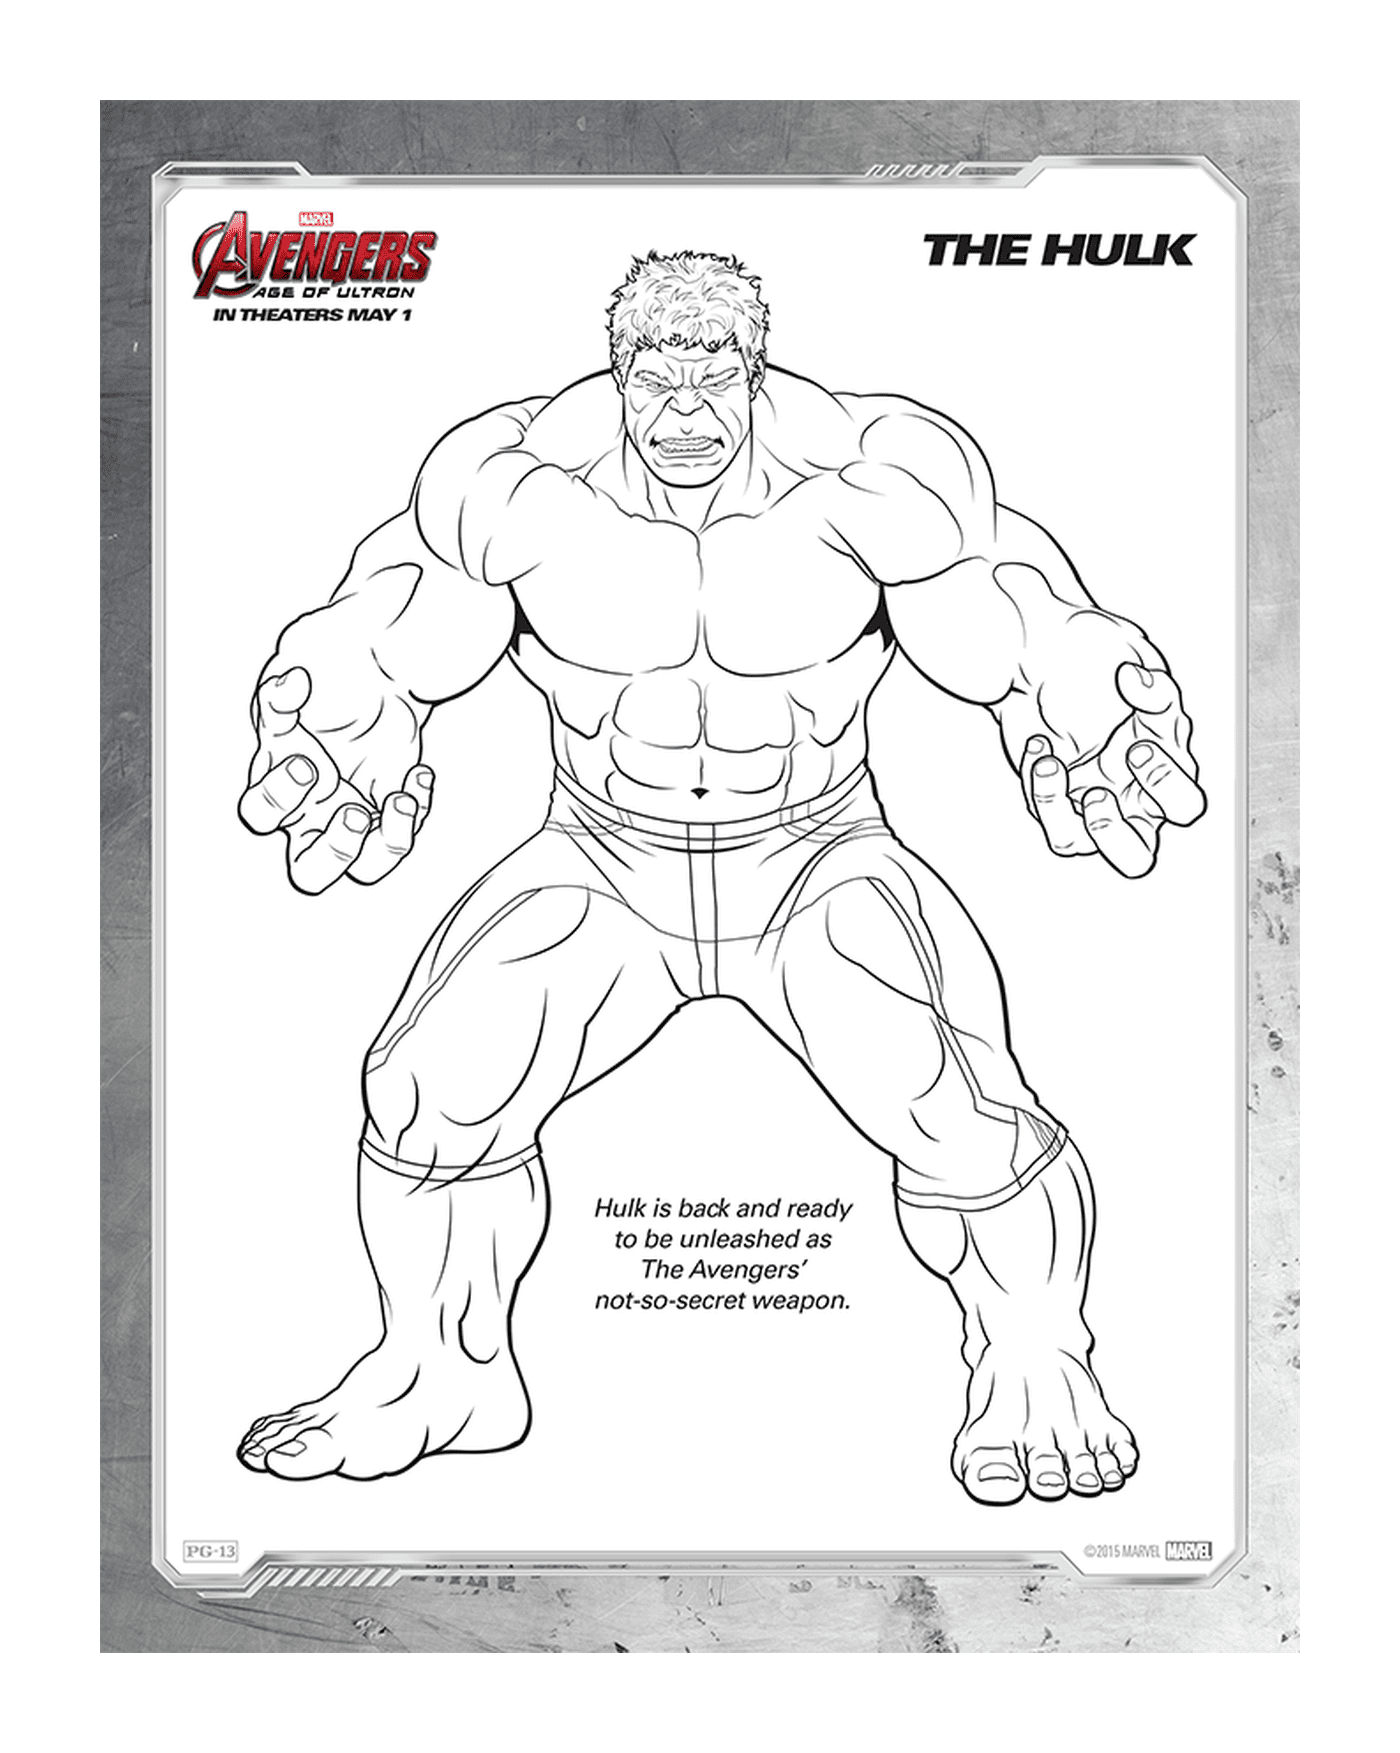  Imagem de um adulto, Hulk 